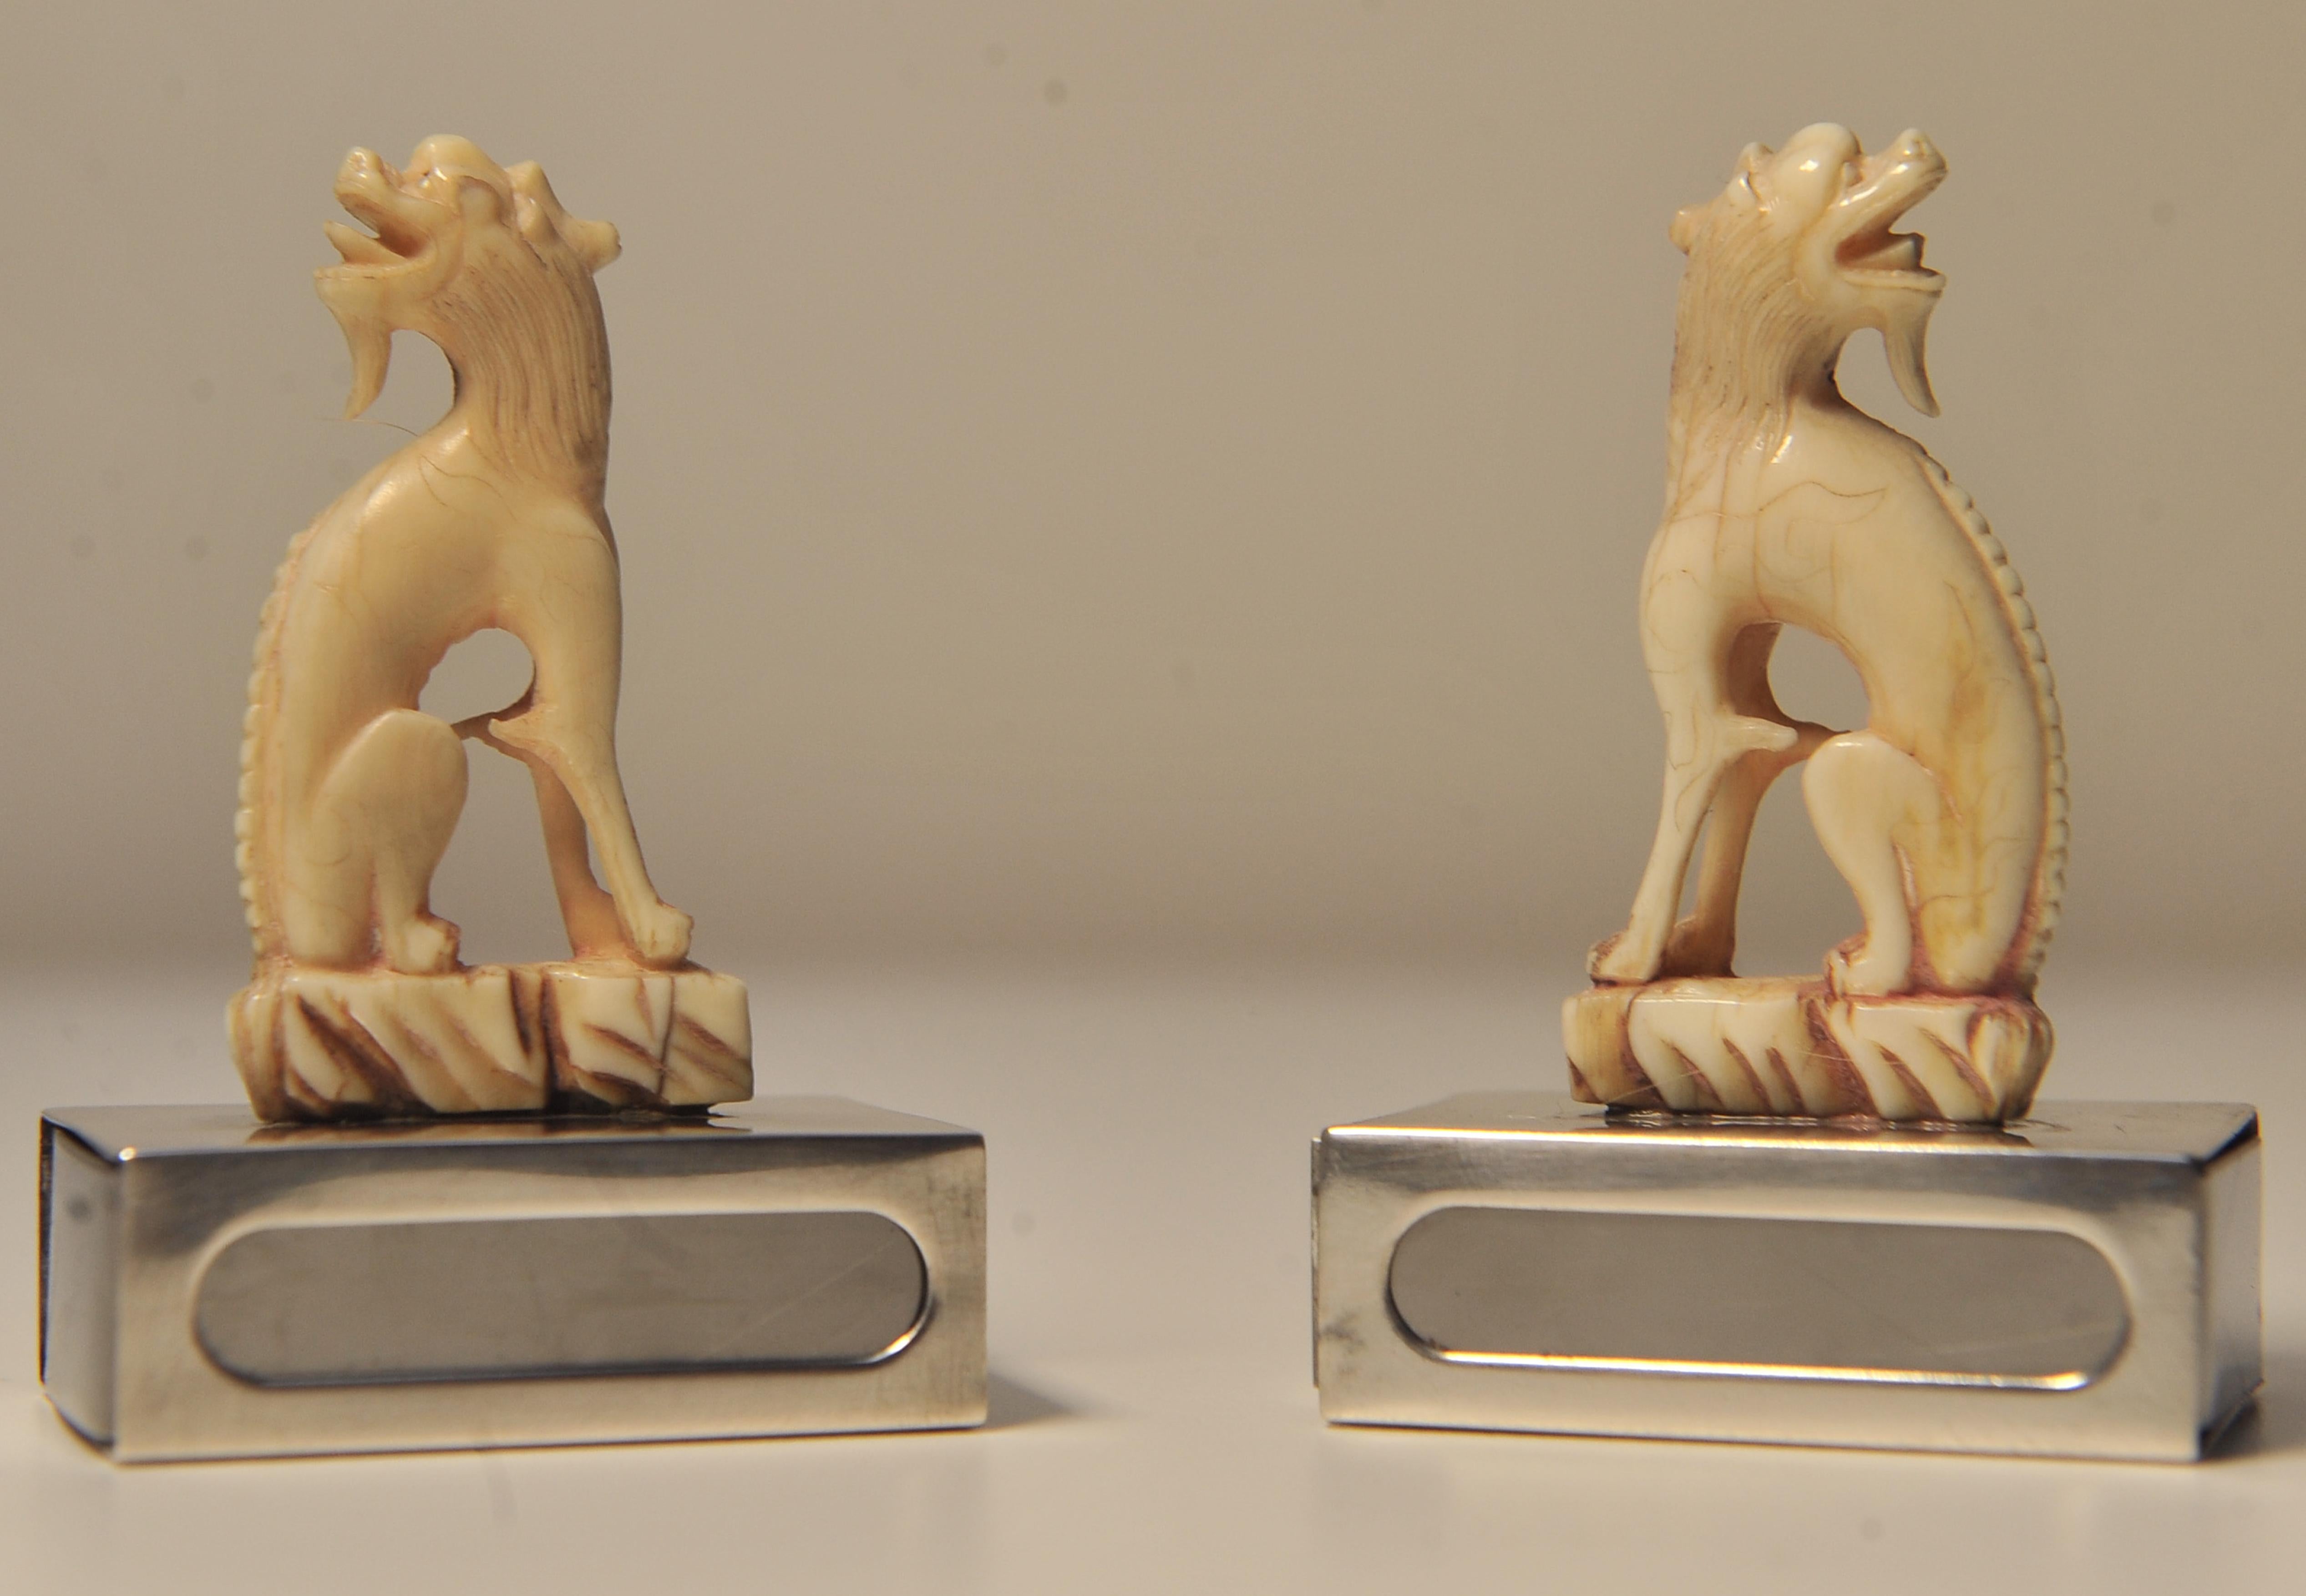 Délicate paire de porte-boîtes d'allumettes assortis en forme de chiens d'ivoire.
Les bases sont marquées d'un cachet d'argent.

Les lions gardiens chinois, ou lions gardiens impériaux, sont un ornement architectural traditionnel chinois, mais leurs